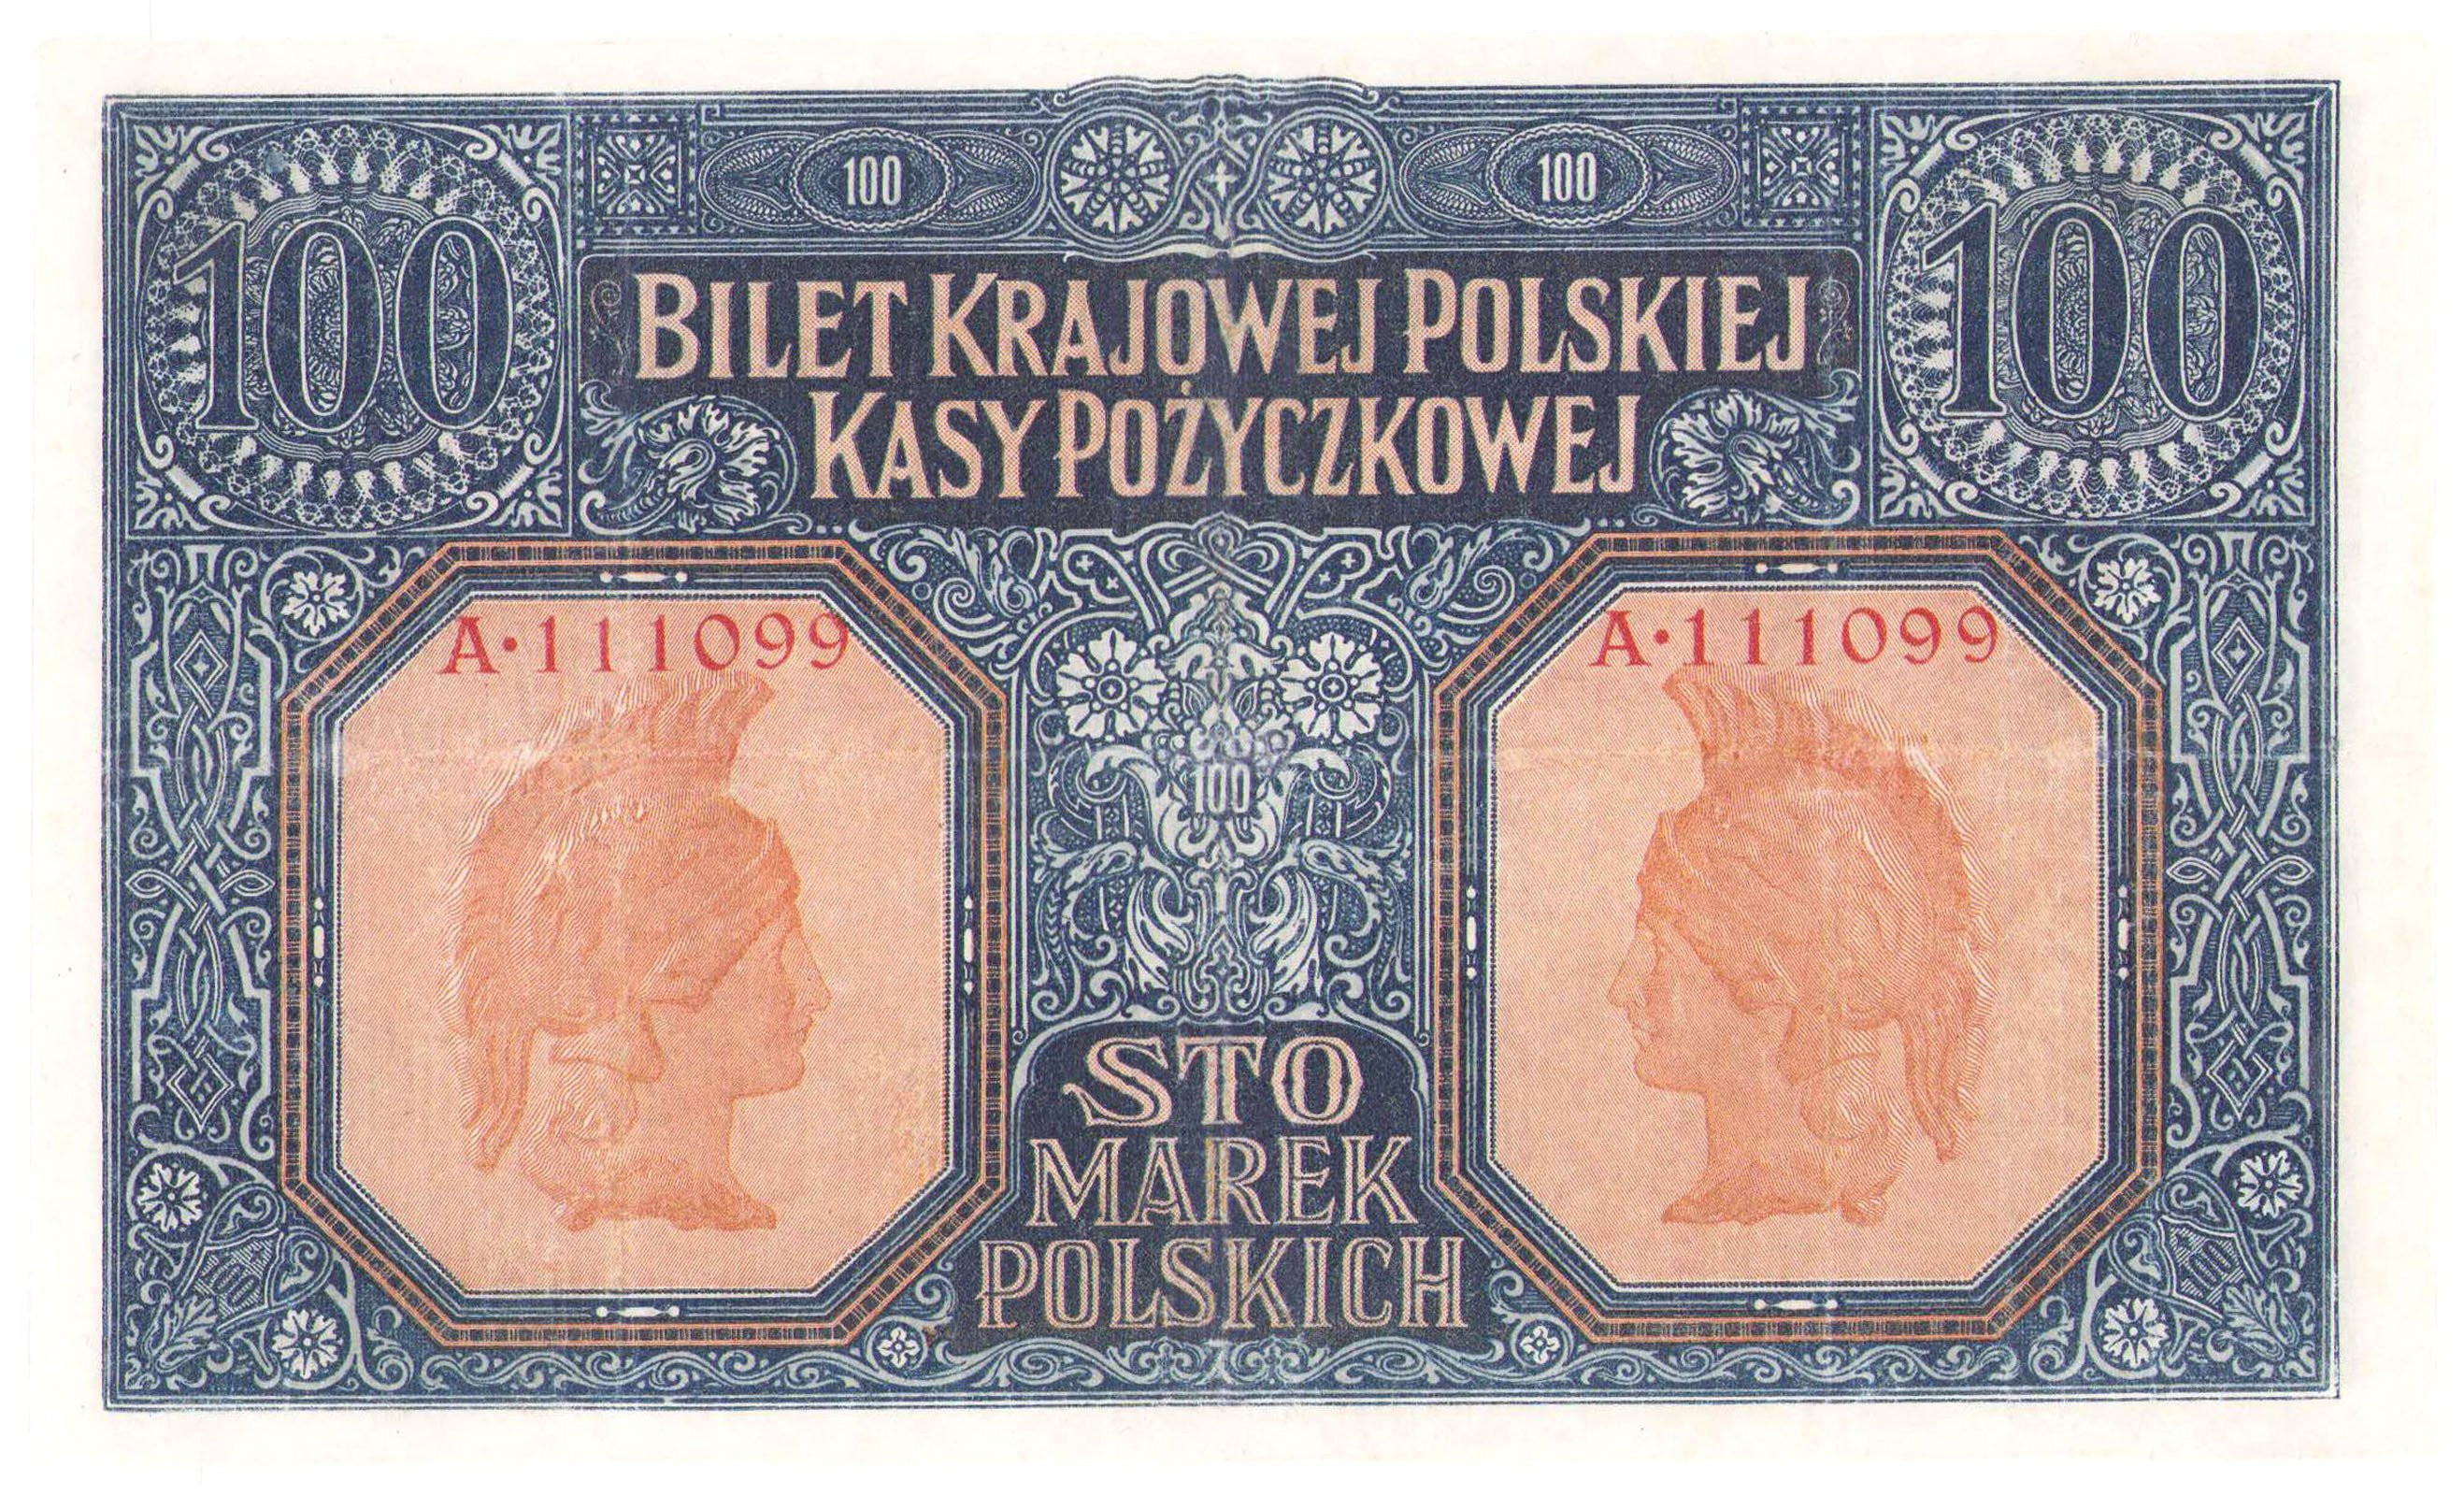 100 marek polskich 1916 seria A, jenerał - RZADKOŚĆ R5